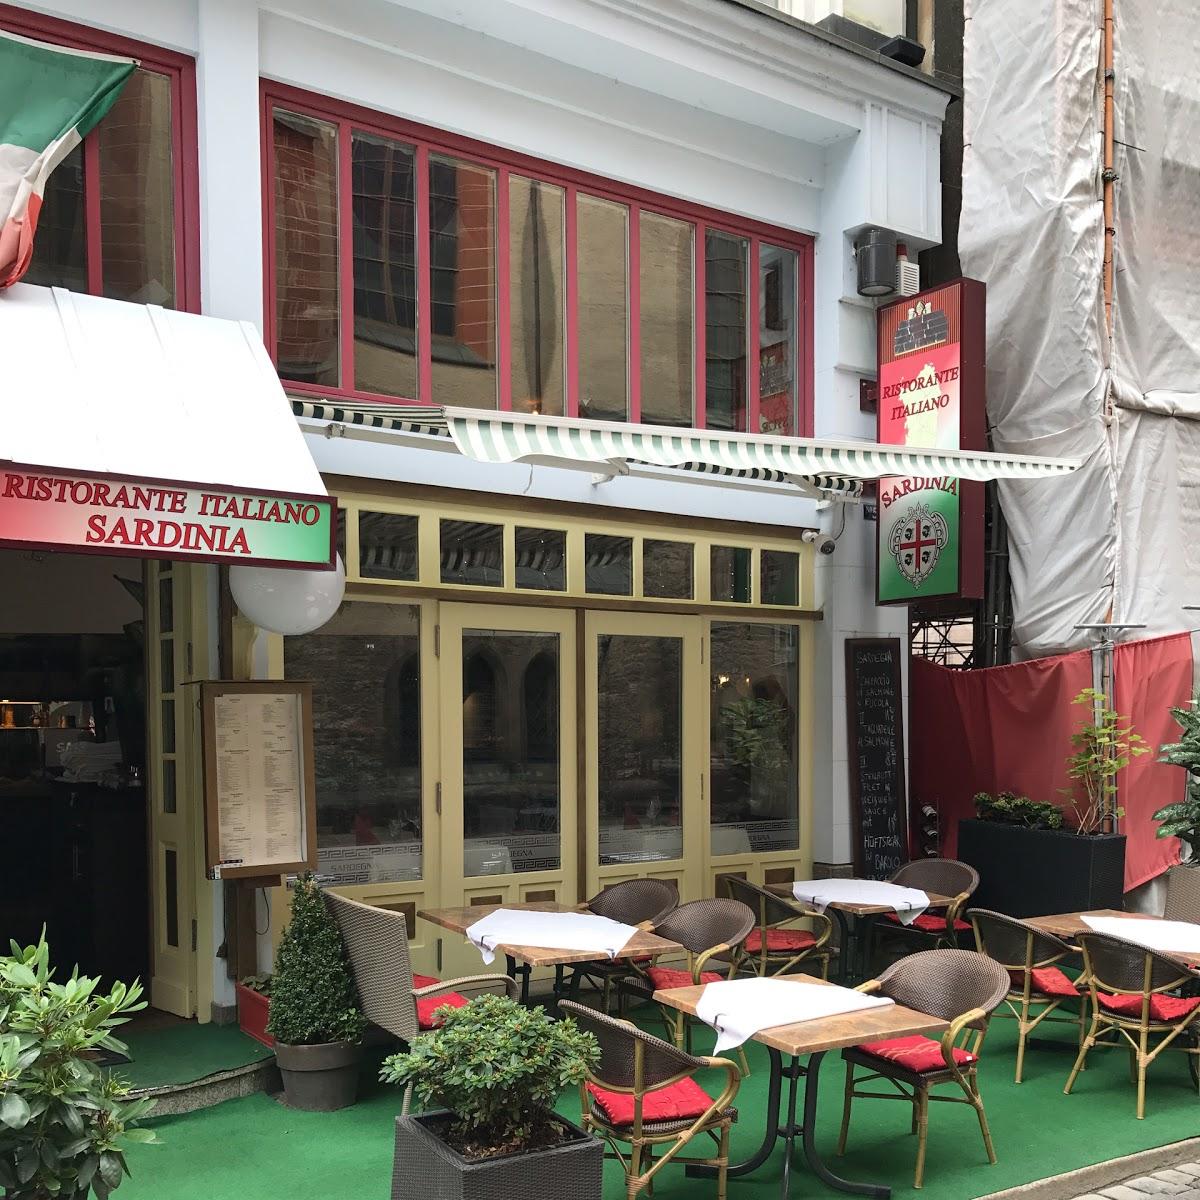 Restaurant "Italiano Sardinia" in Leipzig